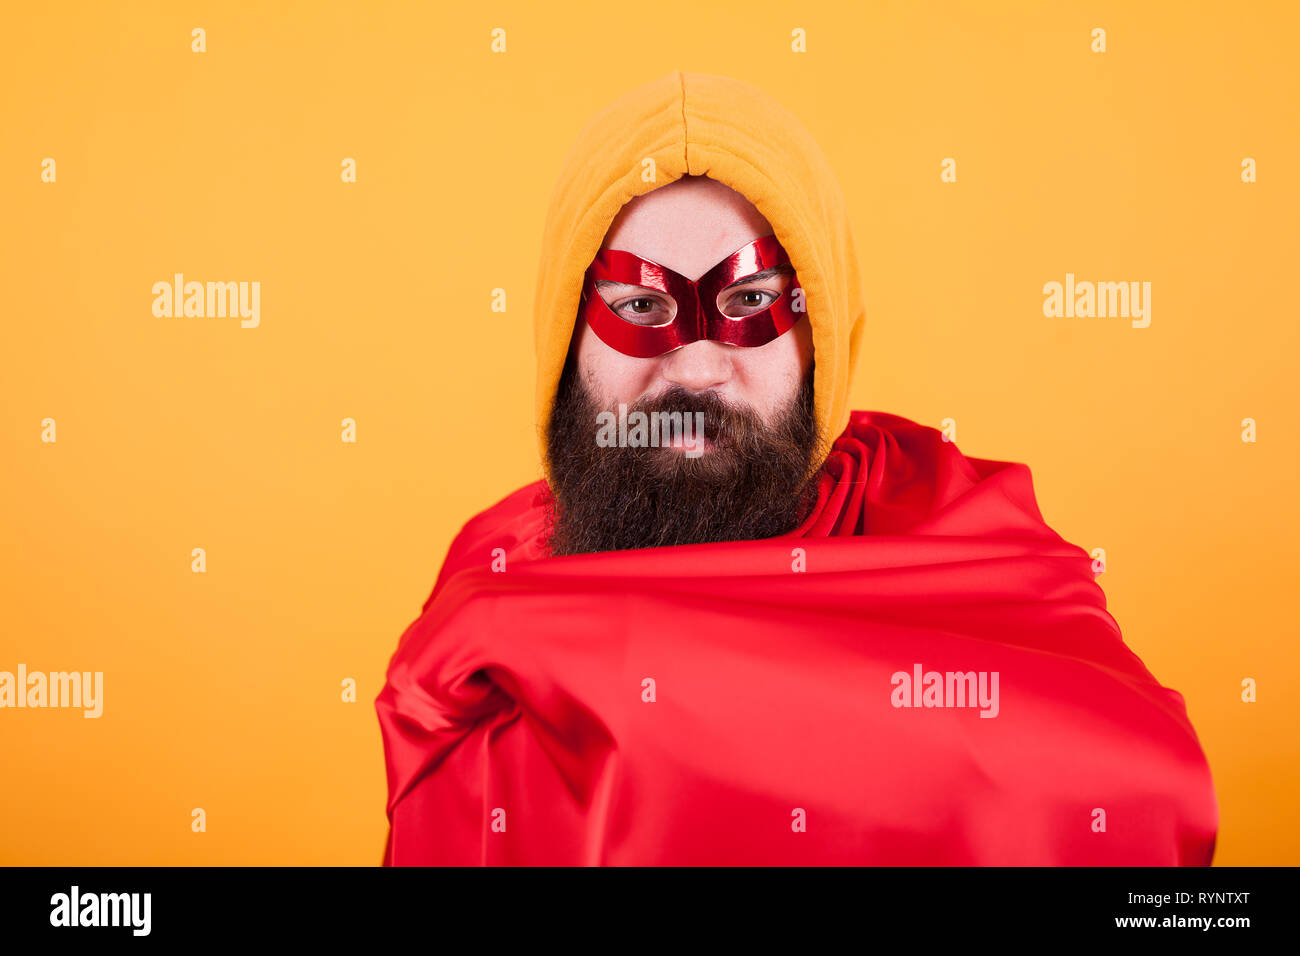 Bärtige Superhelden mit rote Maske mit seinem roten Cape zeigt auf gelben Hintergrund. Stattliche Superhelden. Stockfoto